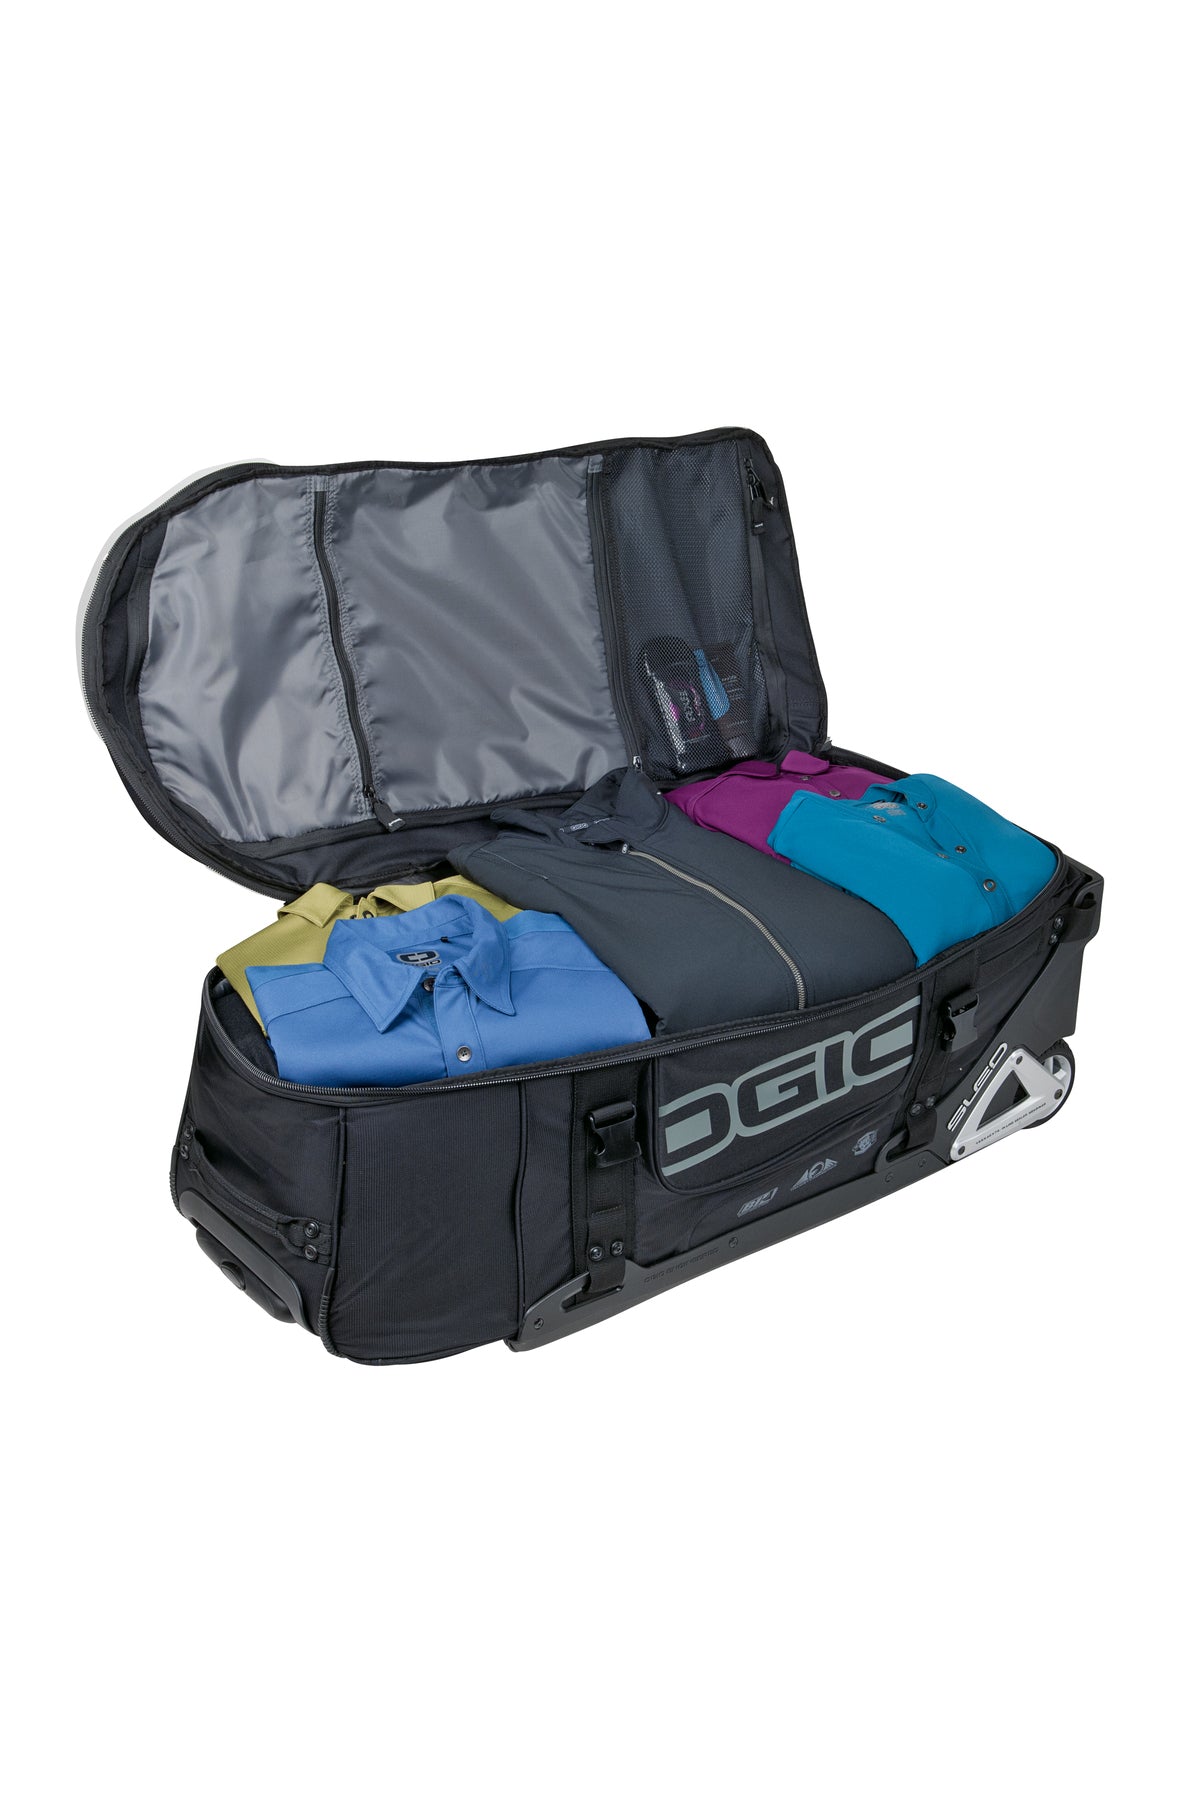 Ogio Rig 9800 Rolling Travel Bag